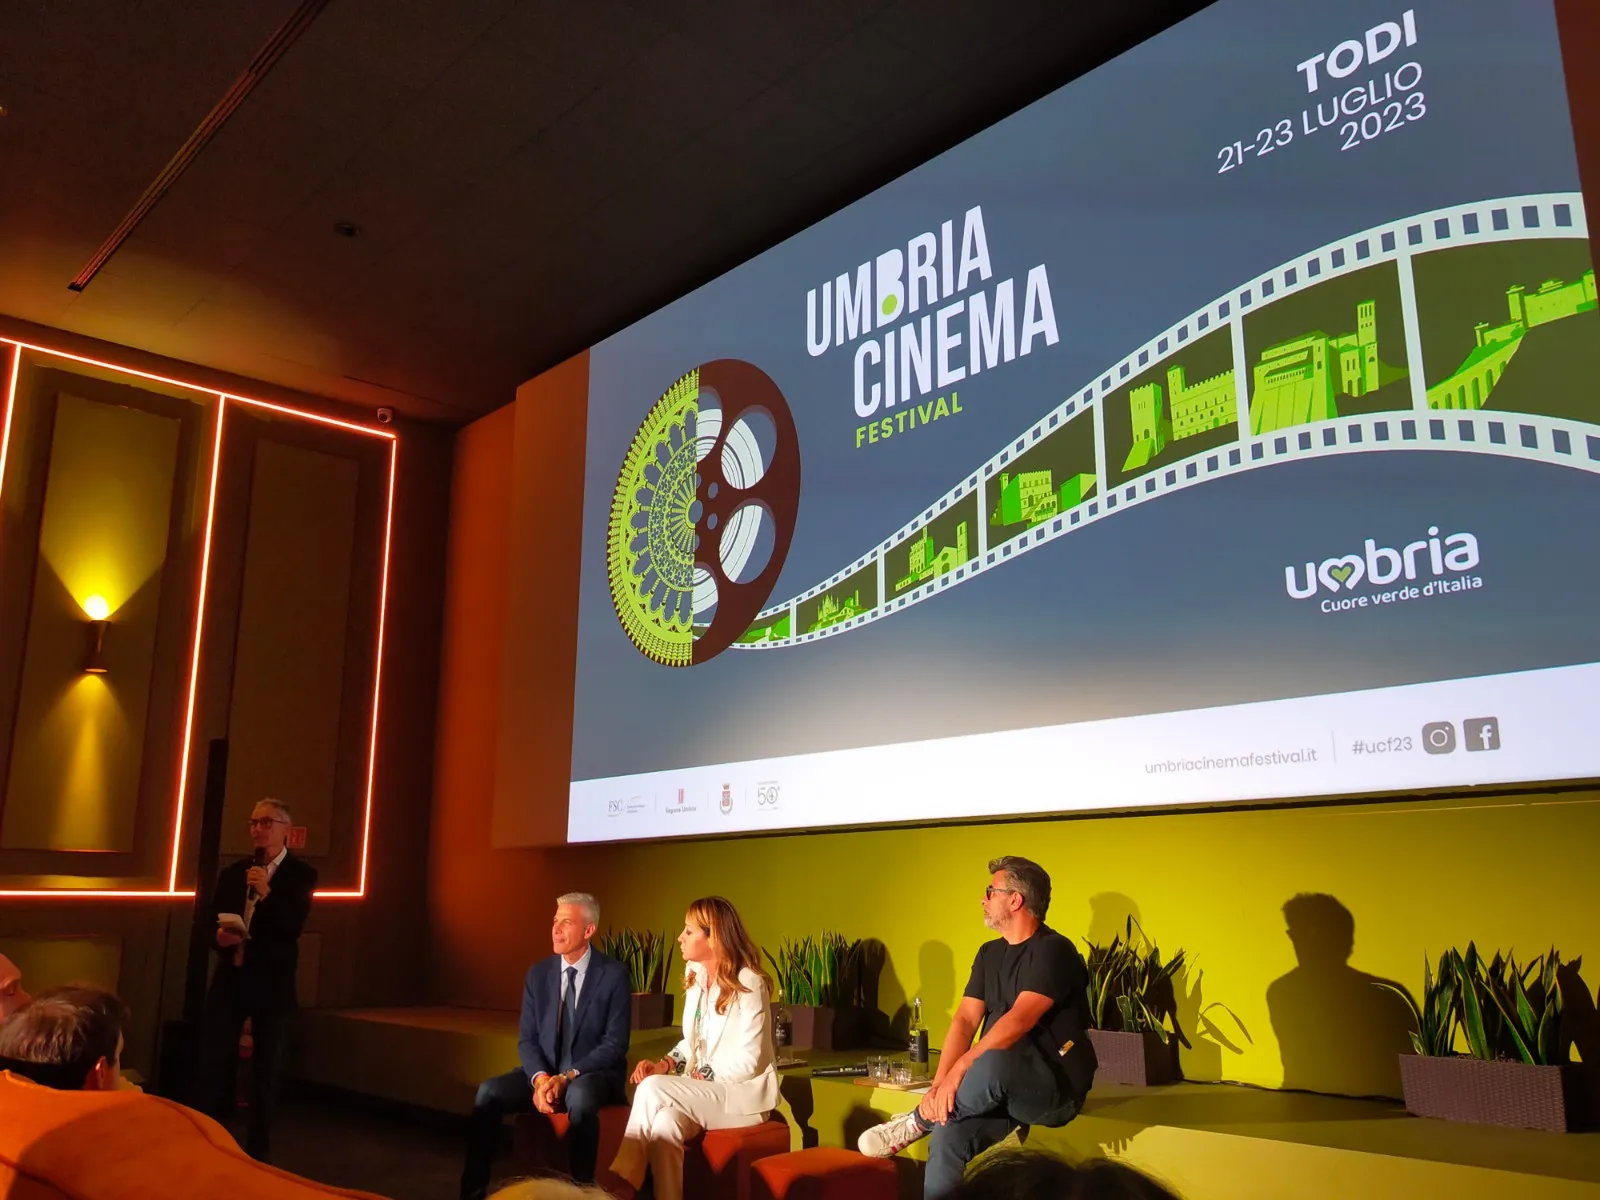 Il programma e gli ospiti dell'Umbria Cinema Festival, dal 20 al 23 luglio a Todi